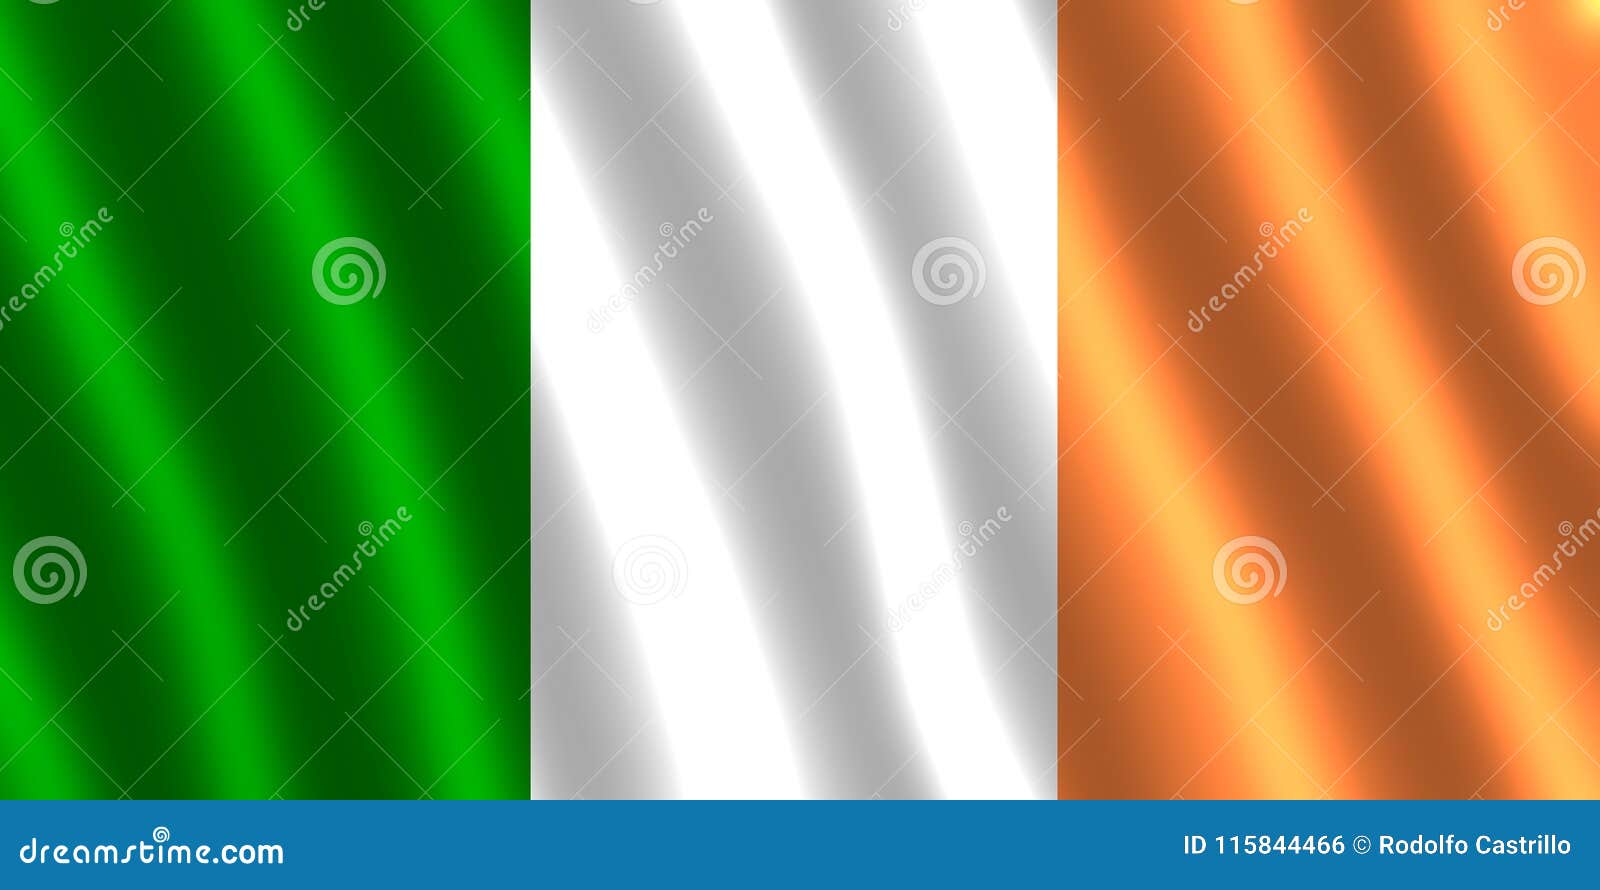 irish flag fluttering